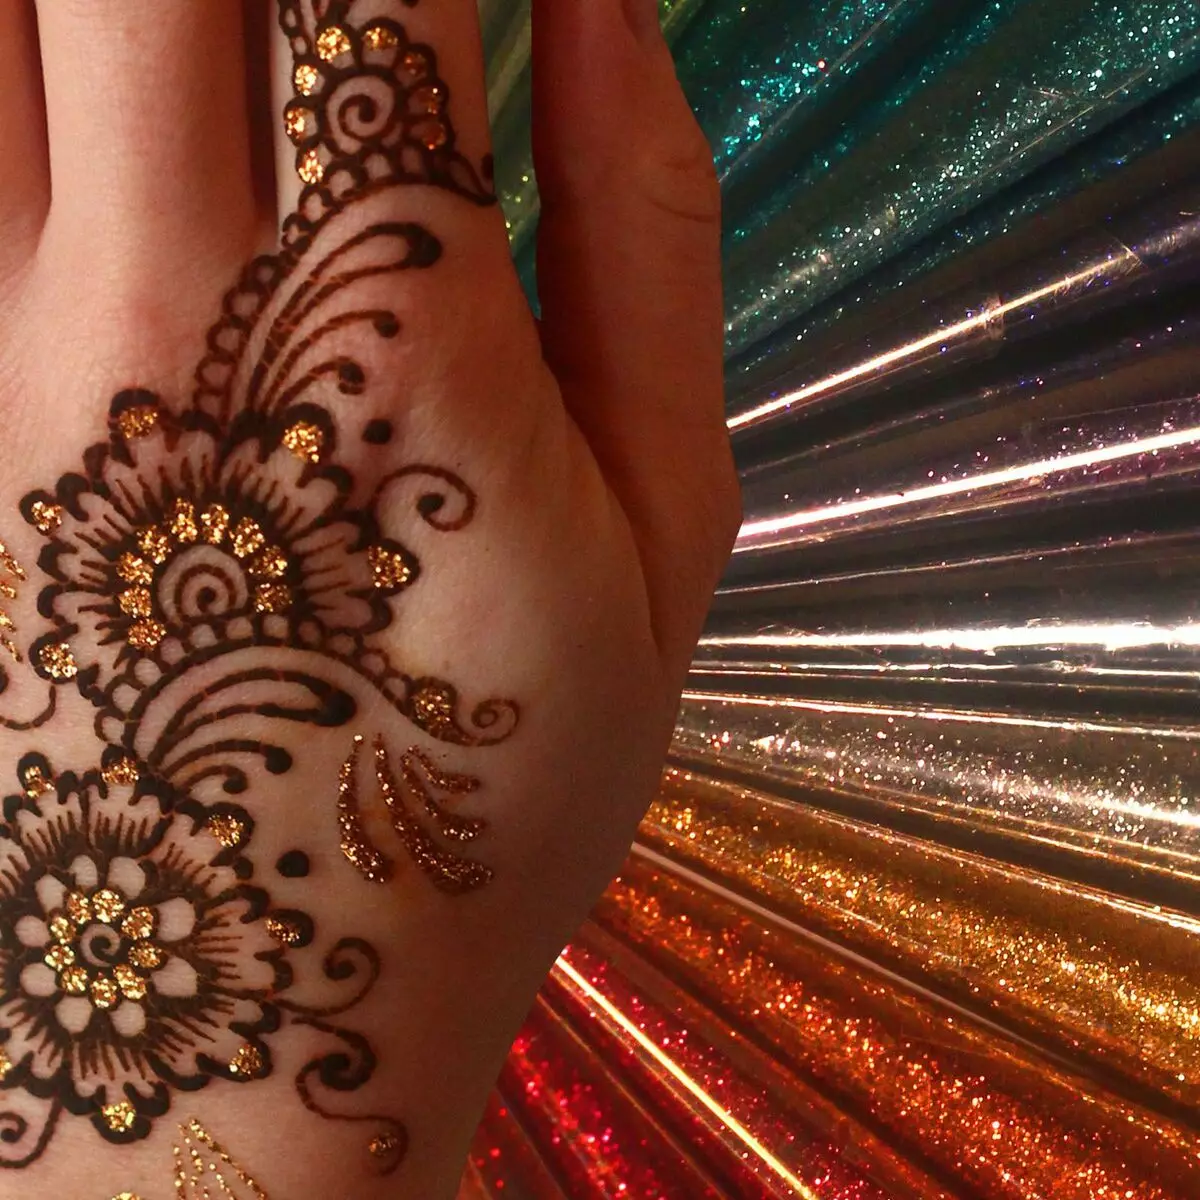 BIOTATE: ມັນແມ່ນຫຍັງແລະການສັກຢາ henna ແລະ sparkles ຖືຫຼາຍປານໃດ? ພວກເຂົາເຮັດແນວໃດ? 291_18